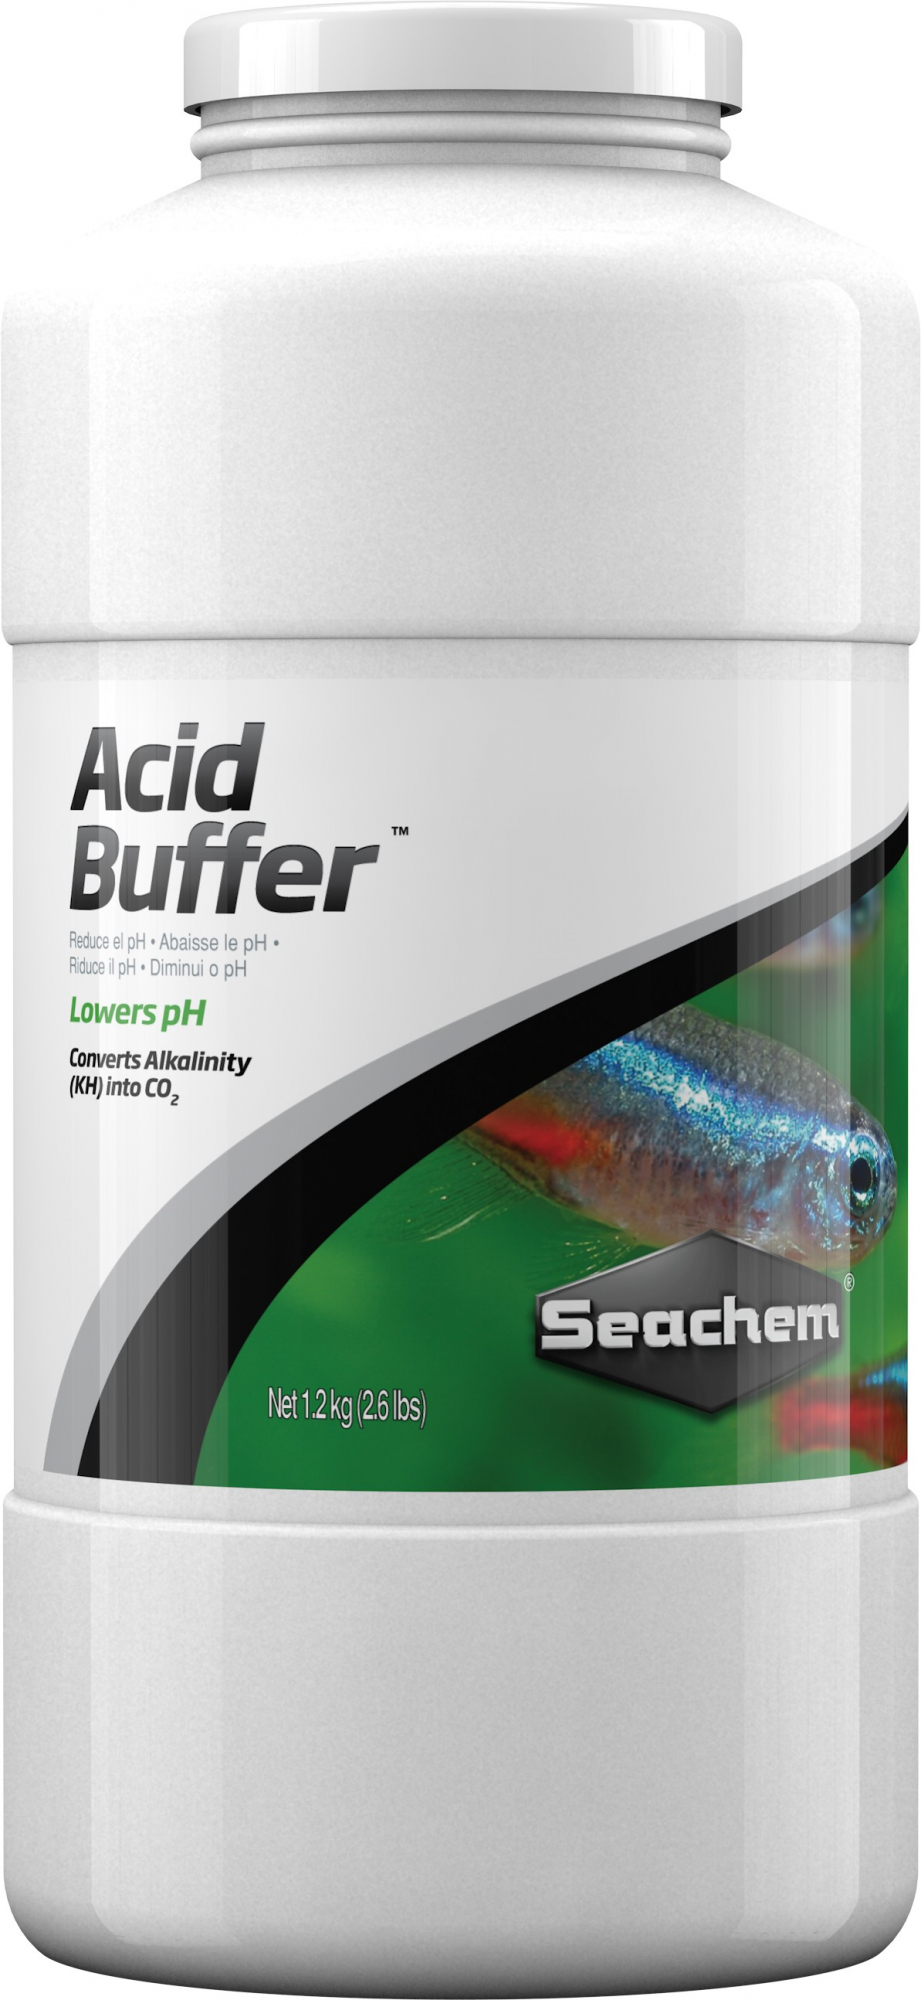 Acid Buffer - SEACHEM - Diminuição do PH